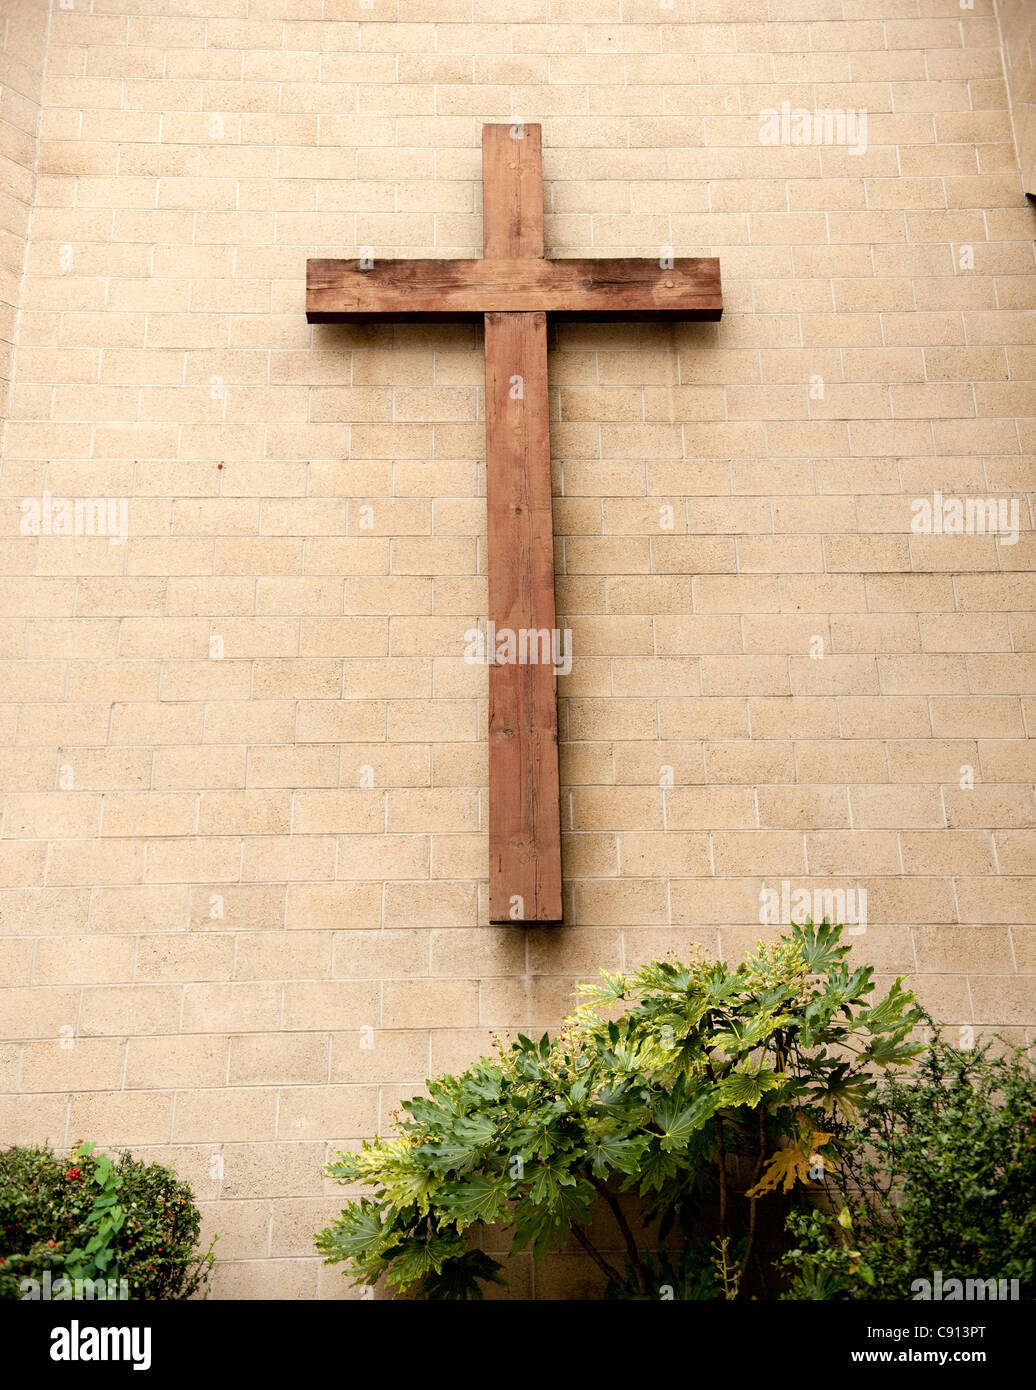 Viele Kirchen in London haben große Woode Kreuze auf der Gebäudefassade. Stockfoto